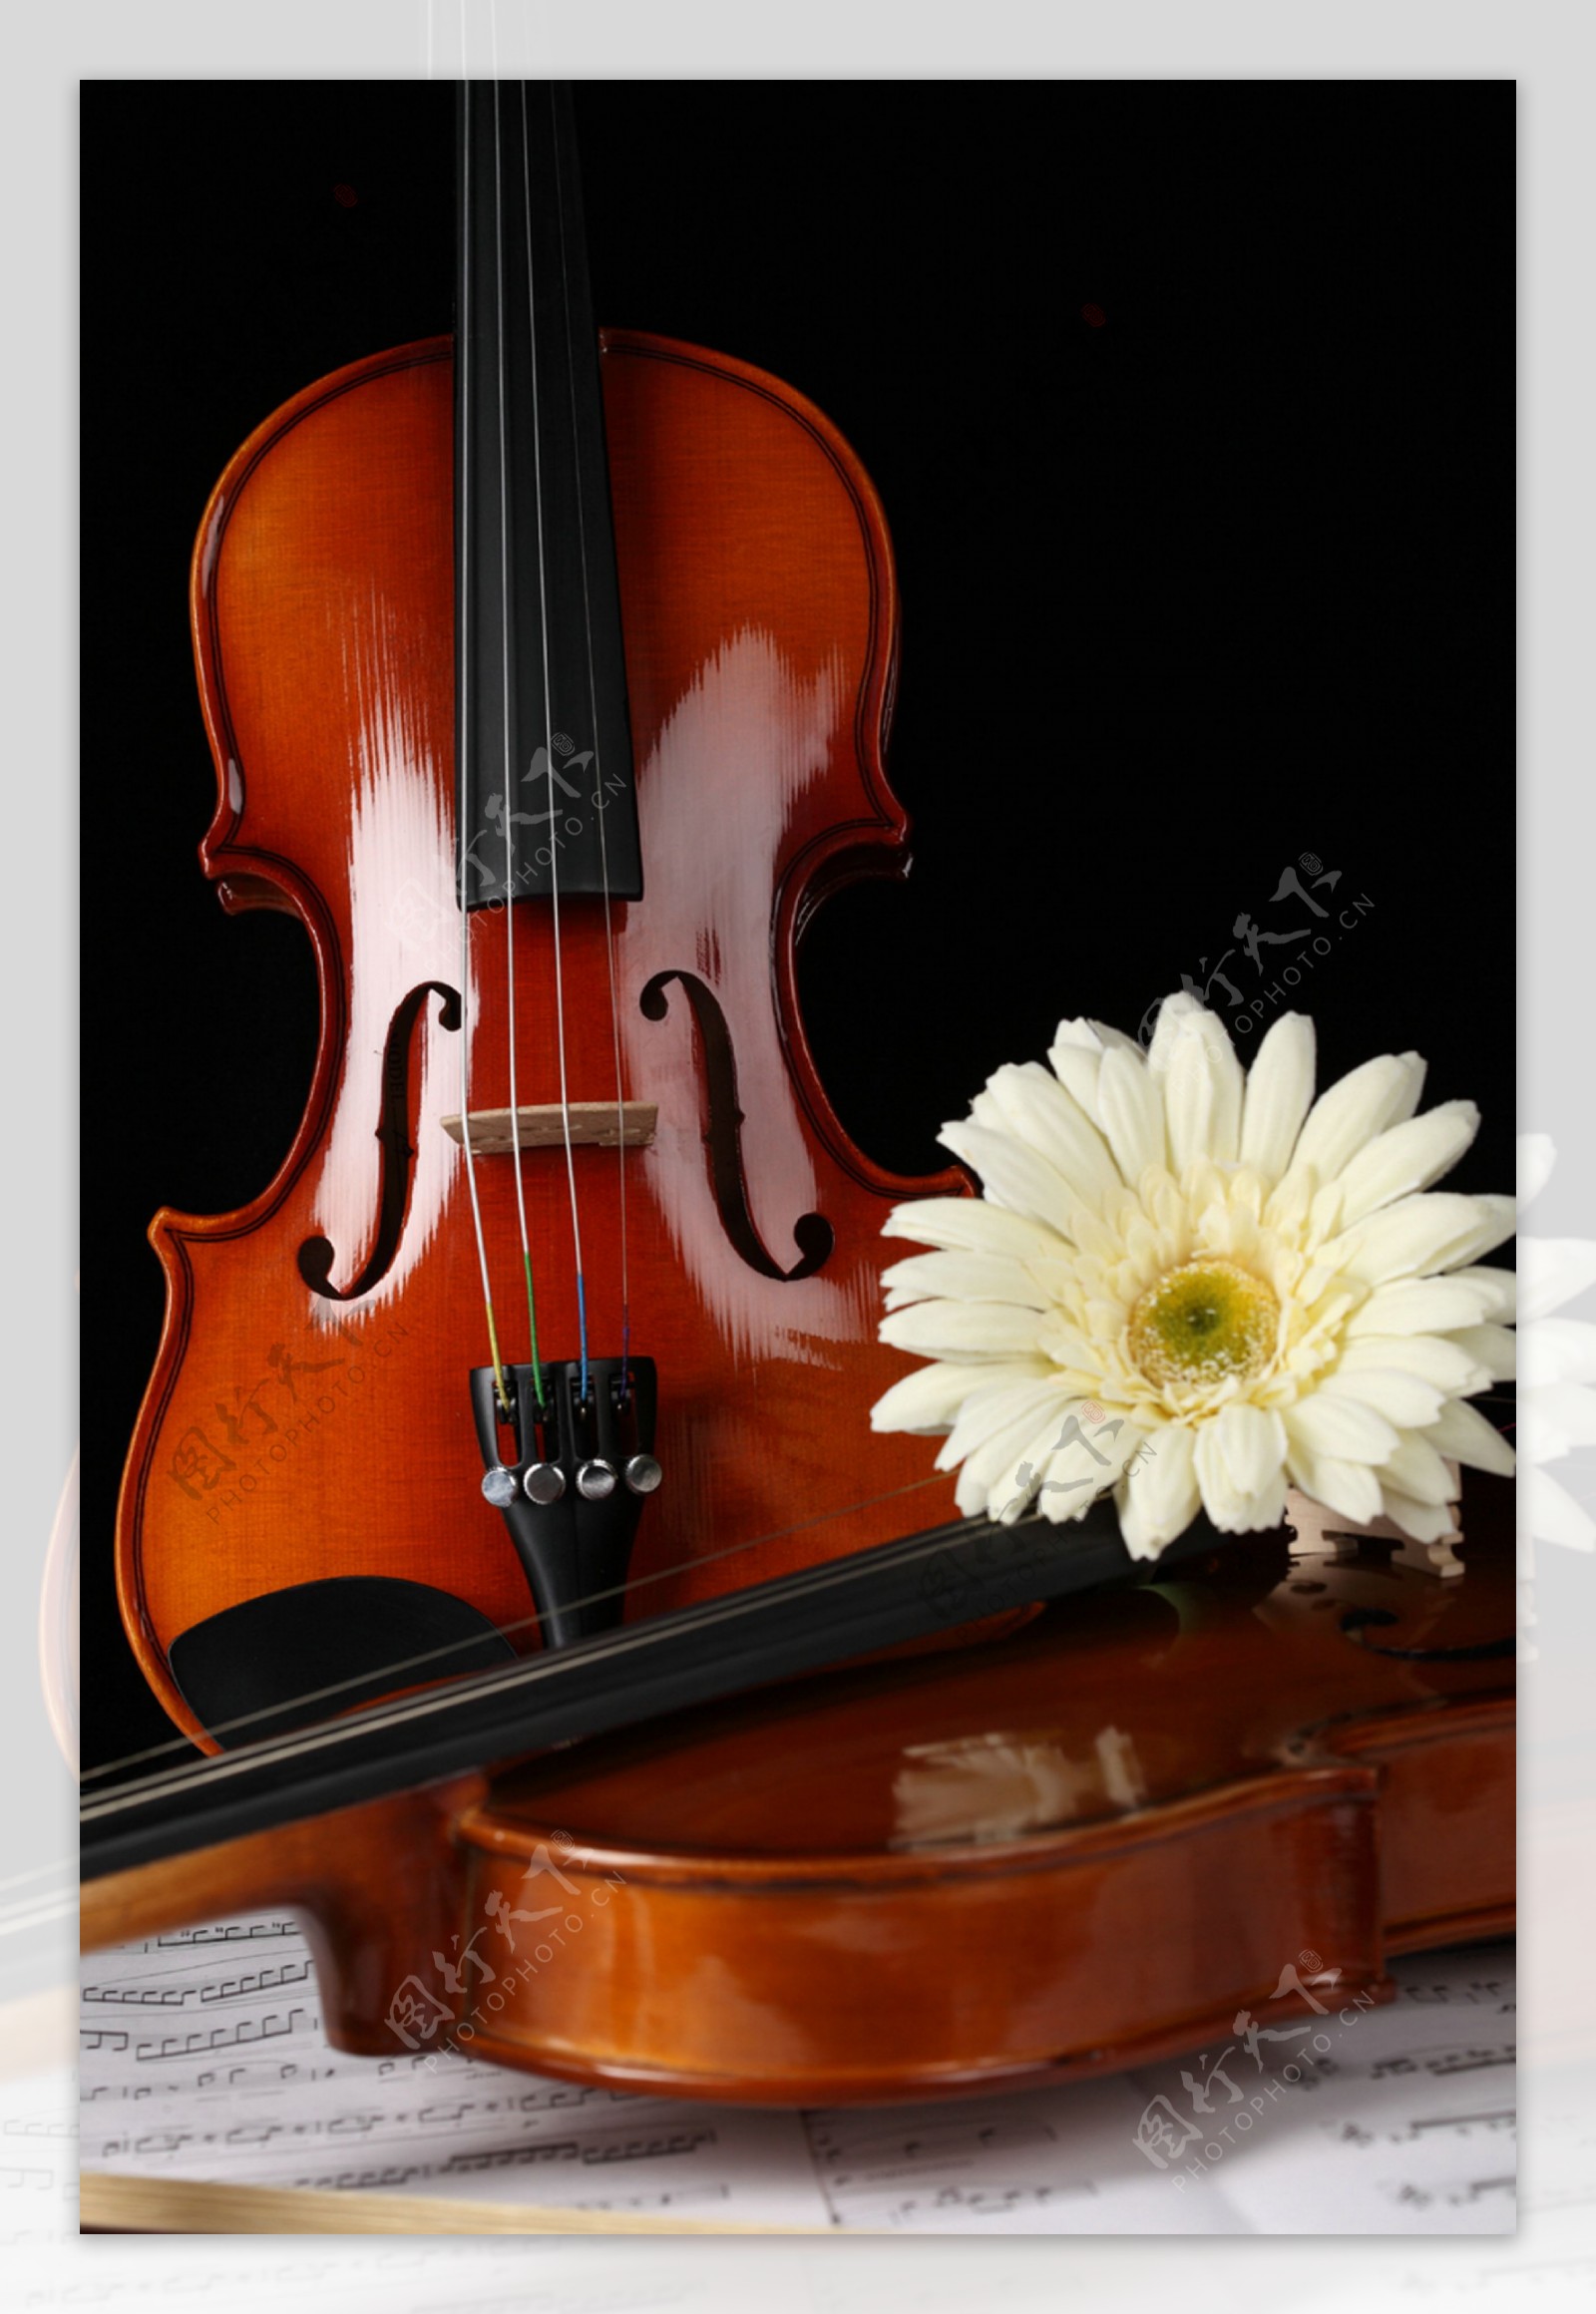 小提琴素材图片